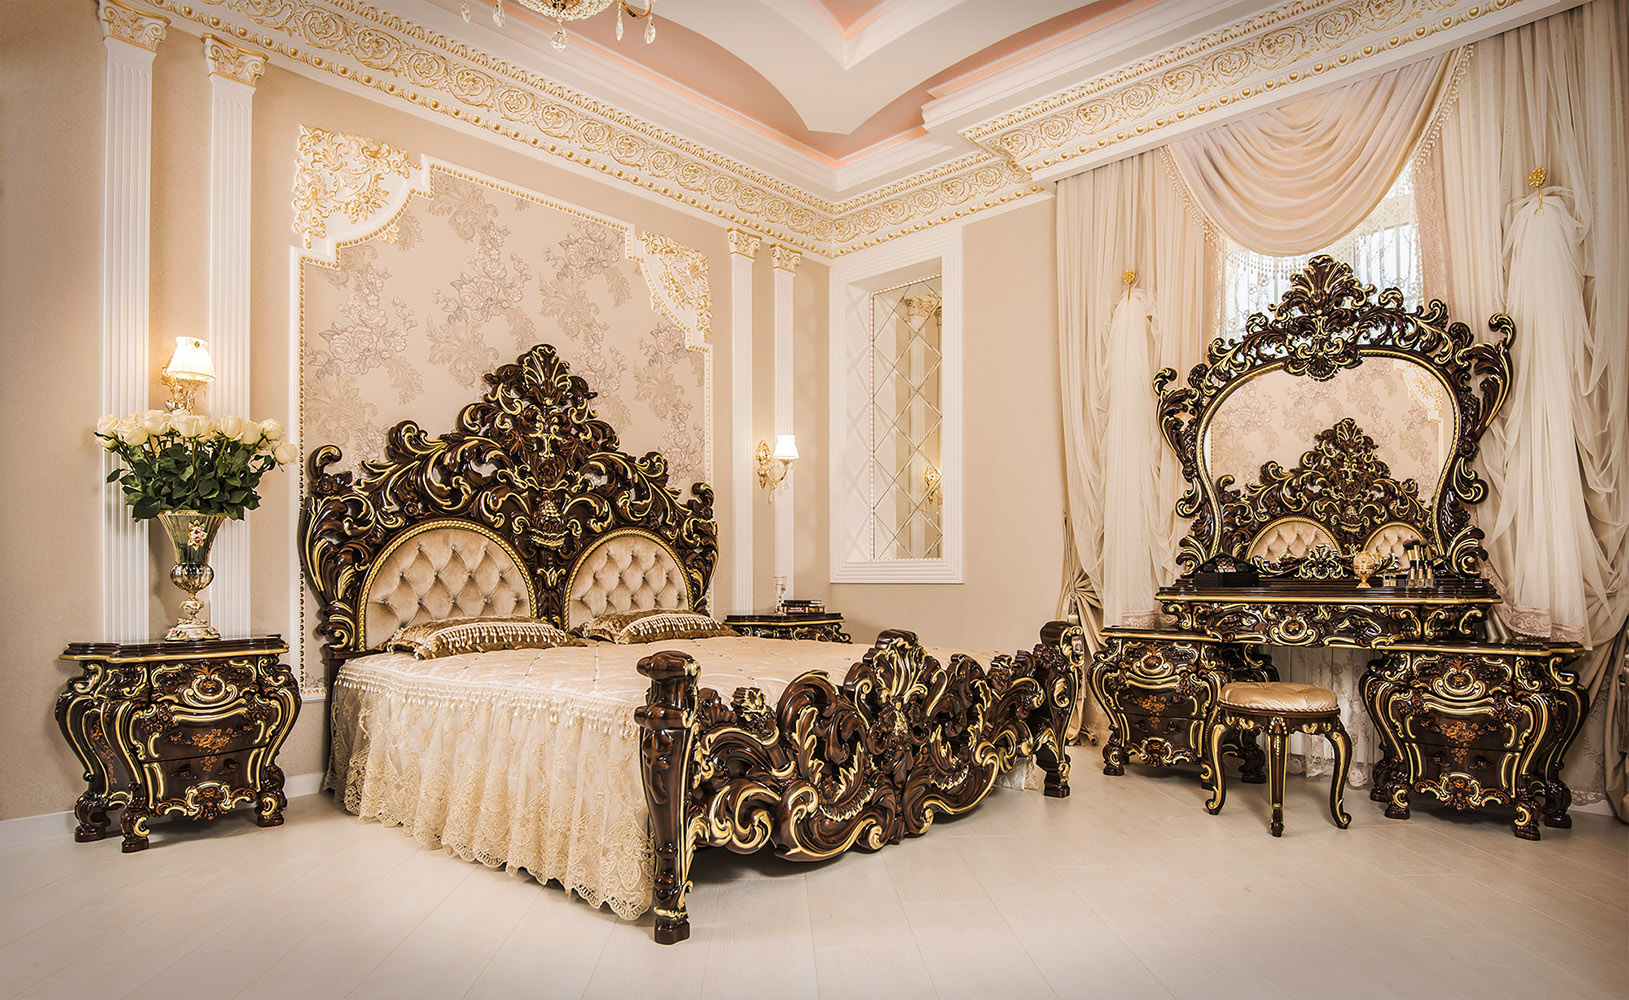 Мебель барокко спальный гарнитур